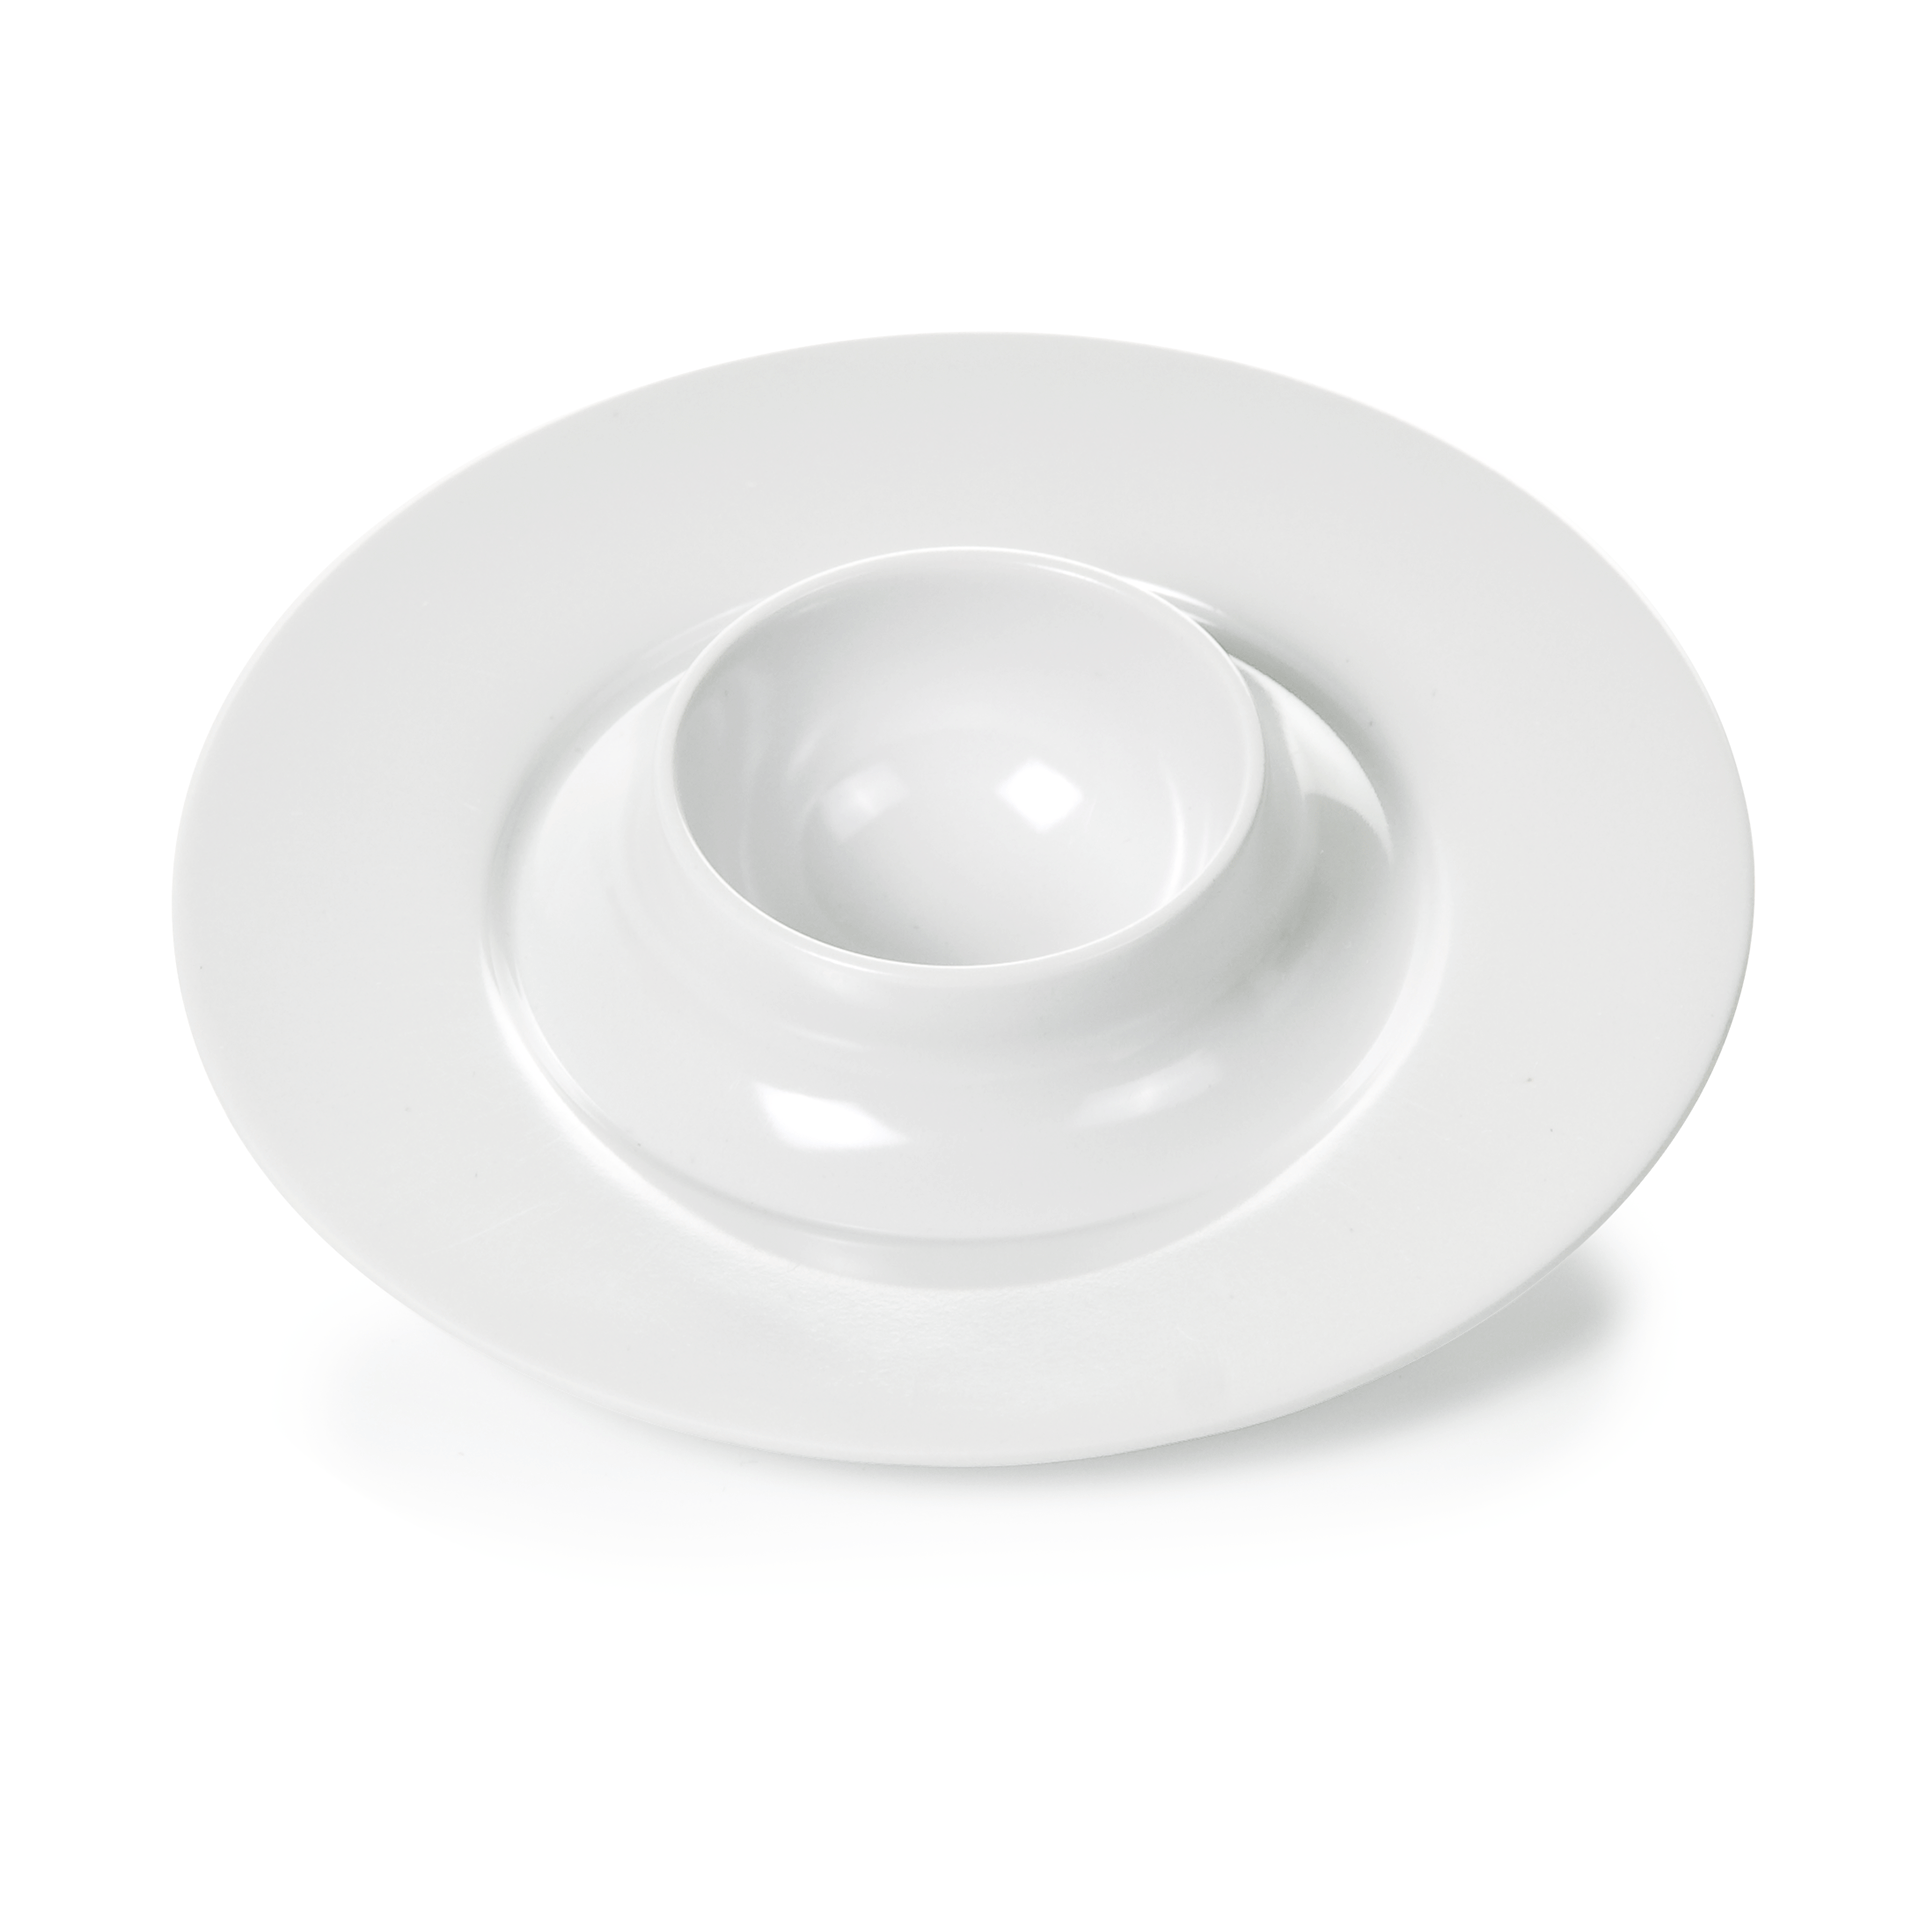 8-teiliges Keramik-Eierbecher-Set mit Eierlöffel Frühstücksei Ei Becher weiß 